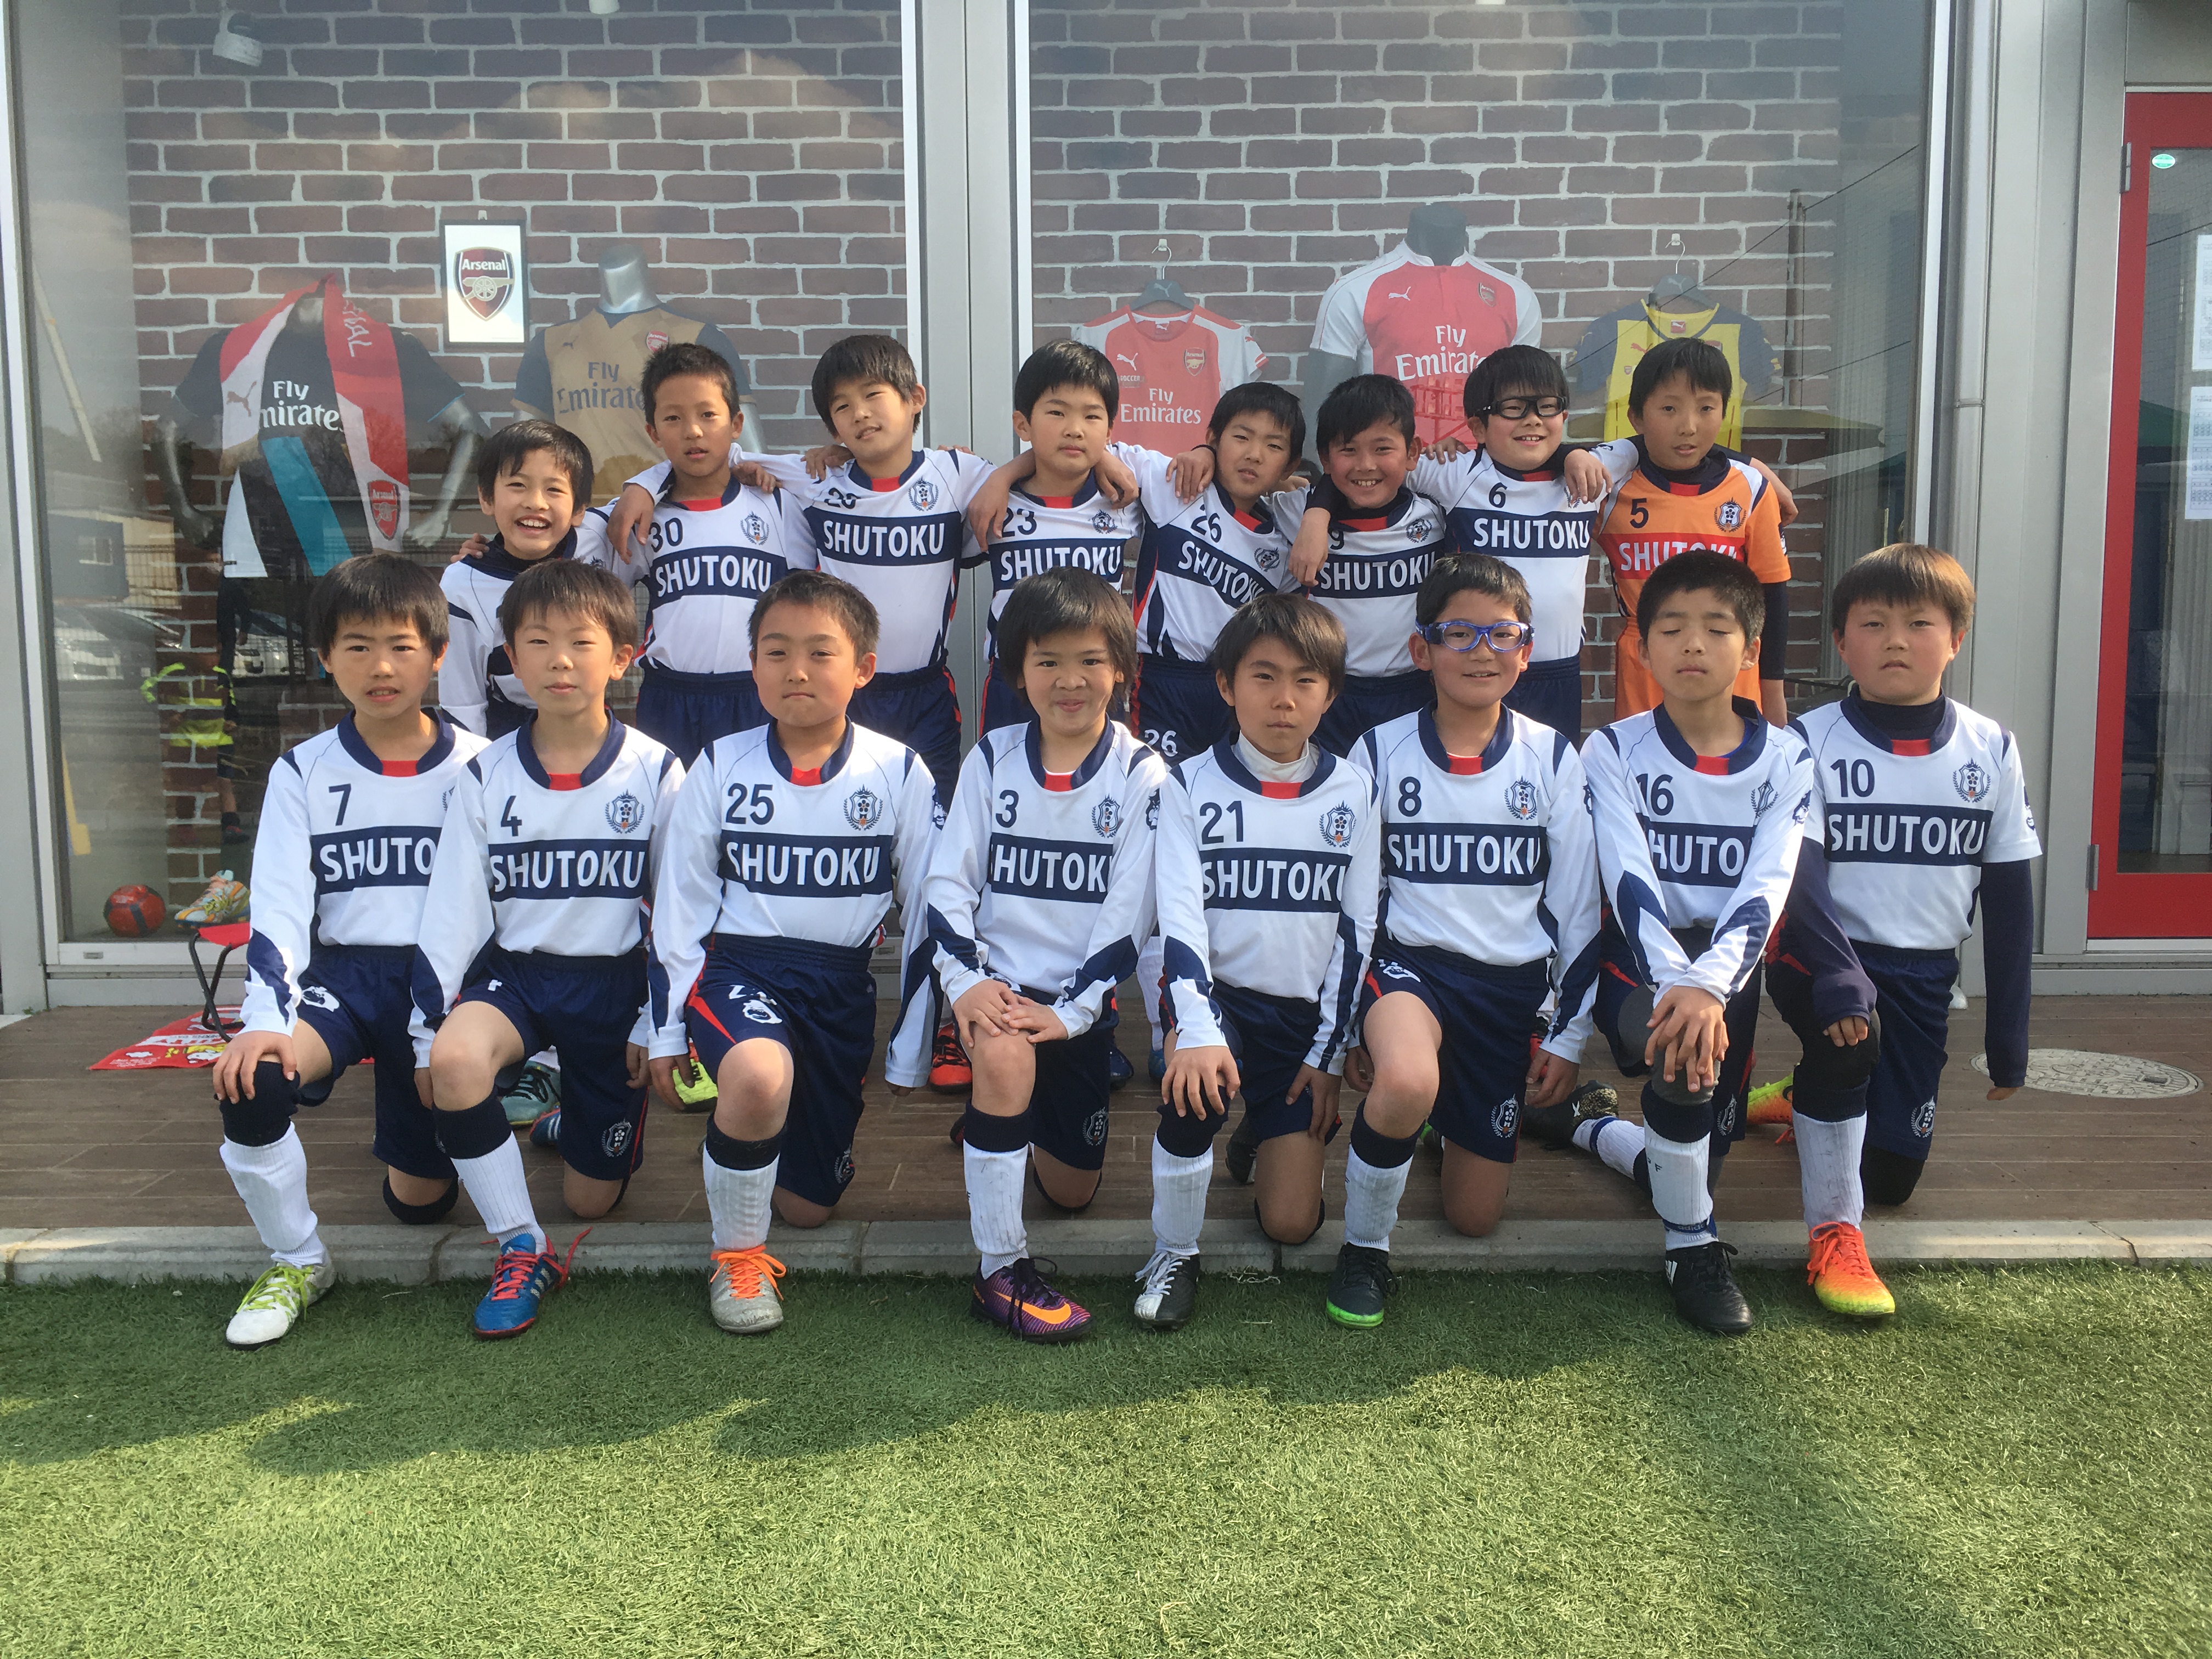 修徳fc ジュニア選手コース 幼児 小学生のサッカースクール Blog Archive 3年生アーセナルcup